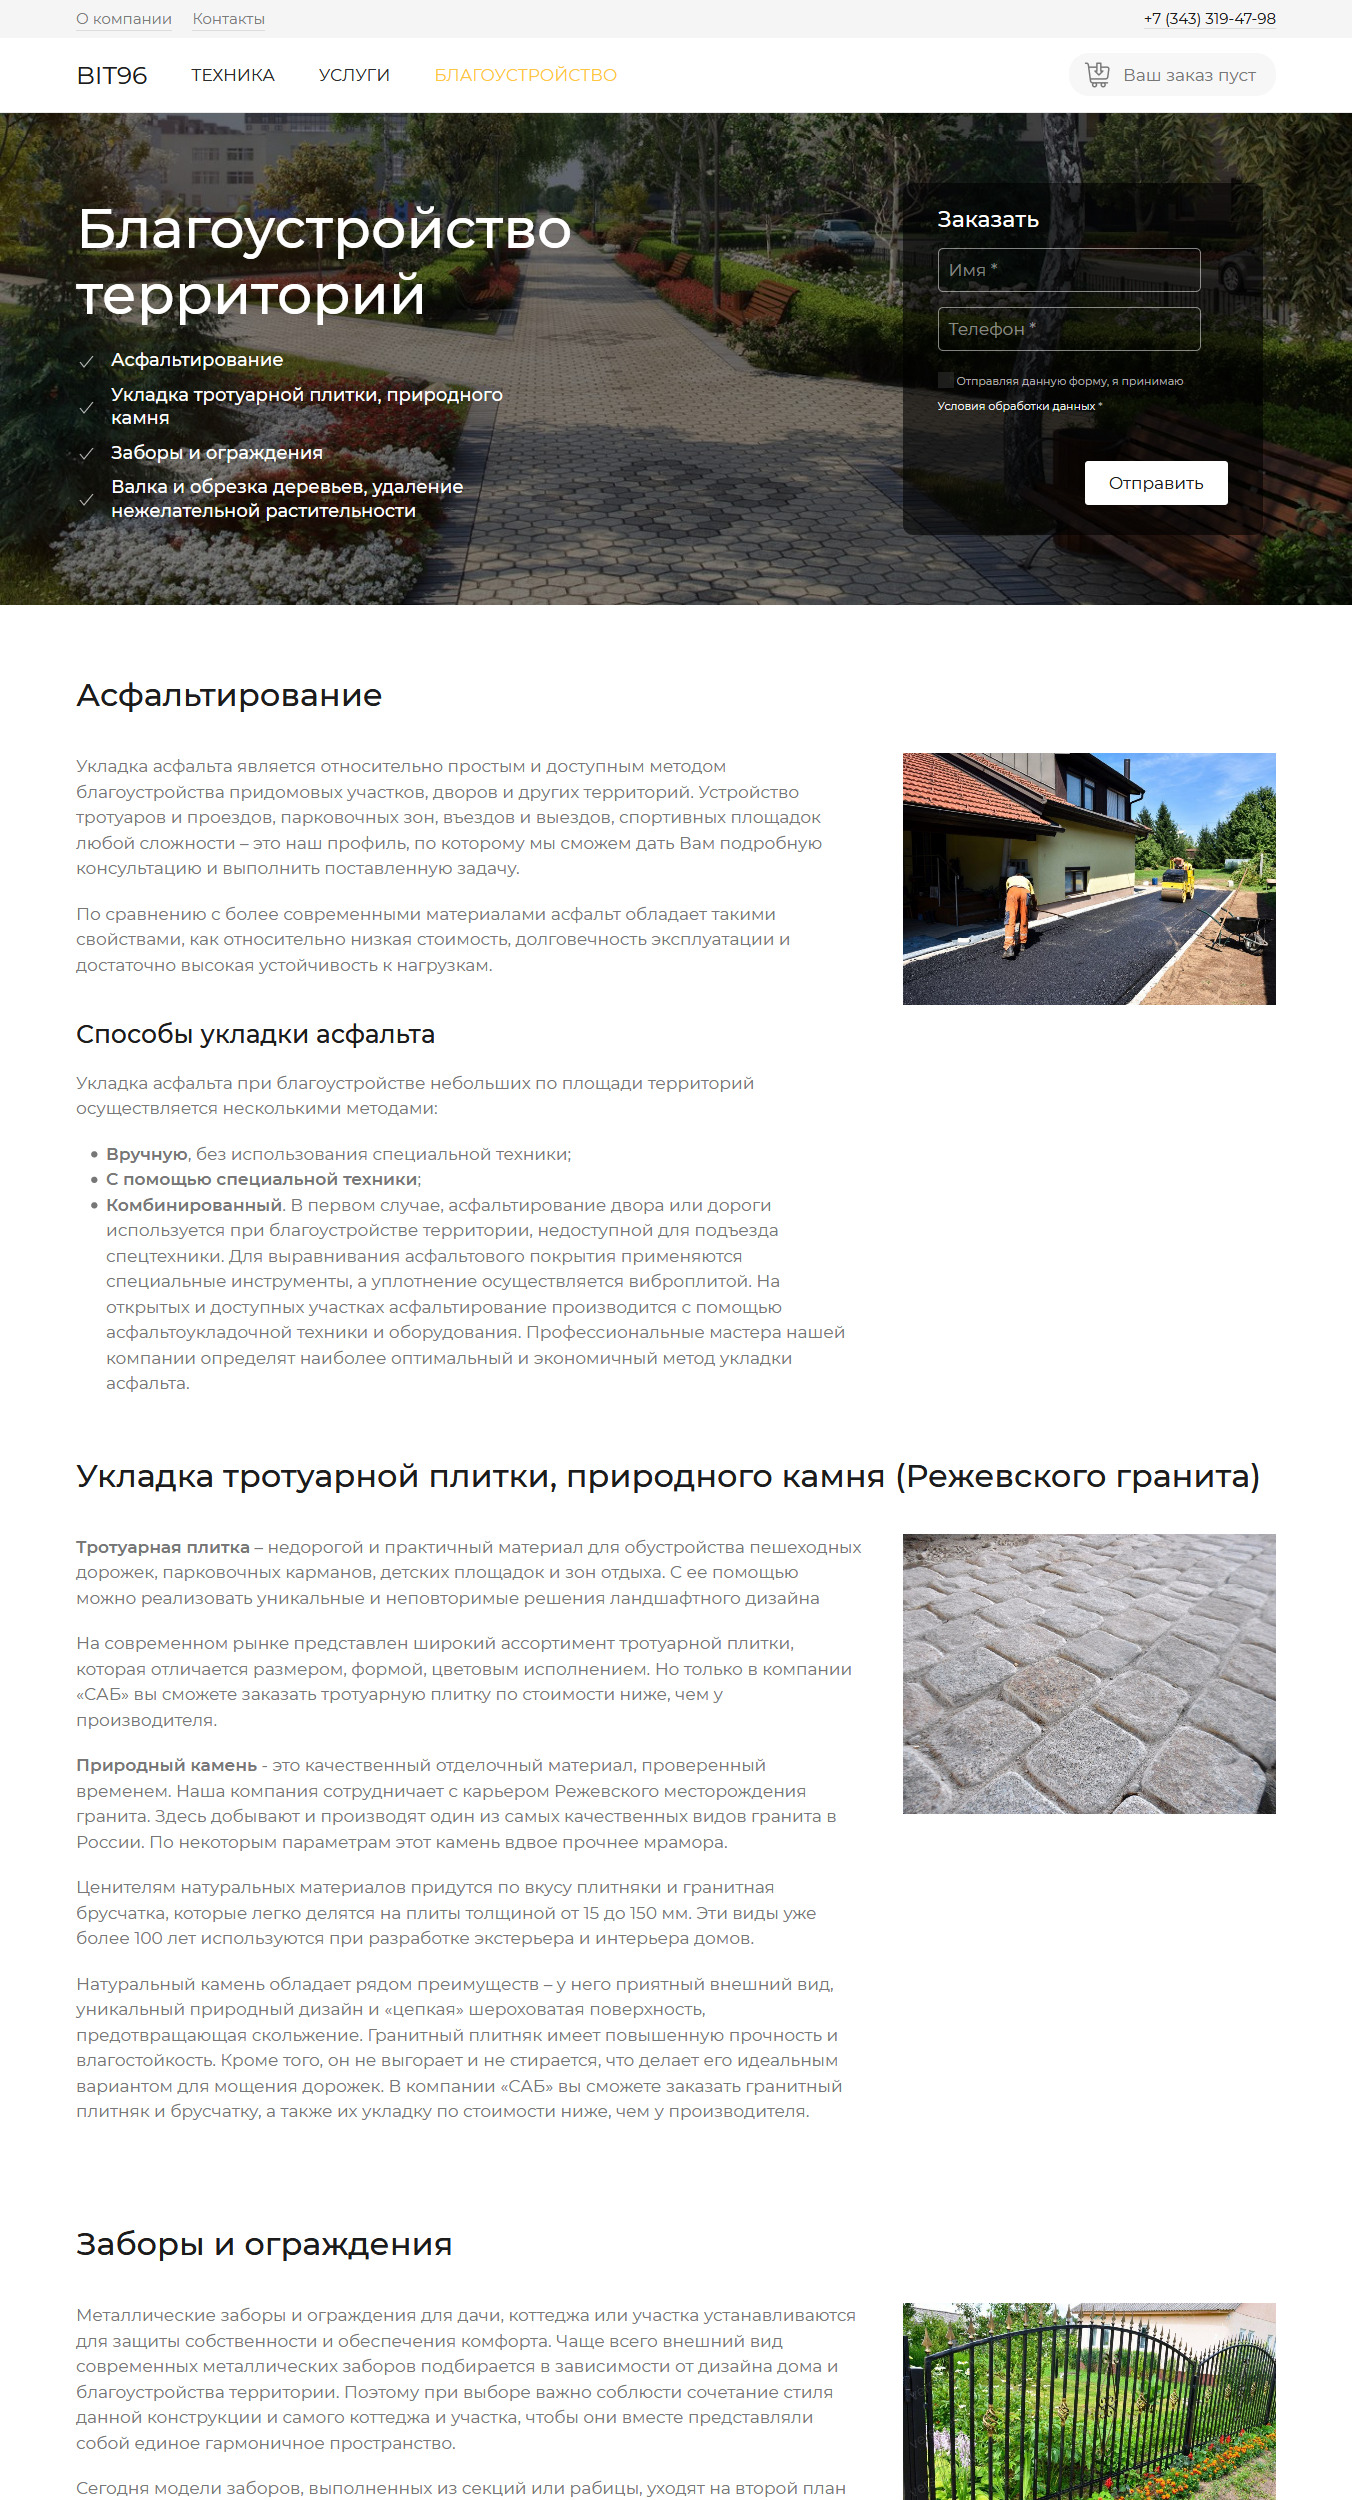 Посадочная страница для услуги "Благоустройство территорий" сайта bit96.ru